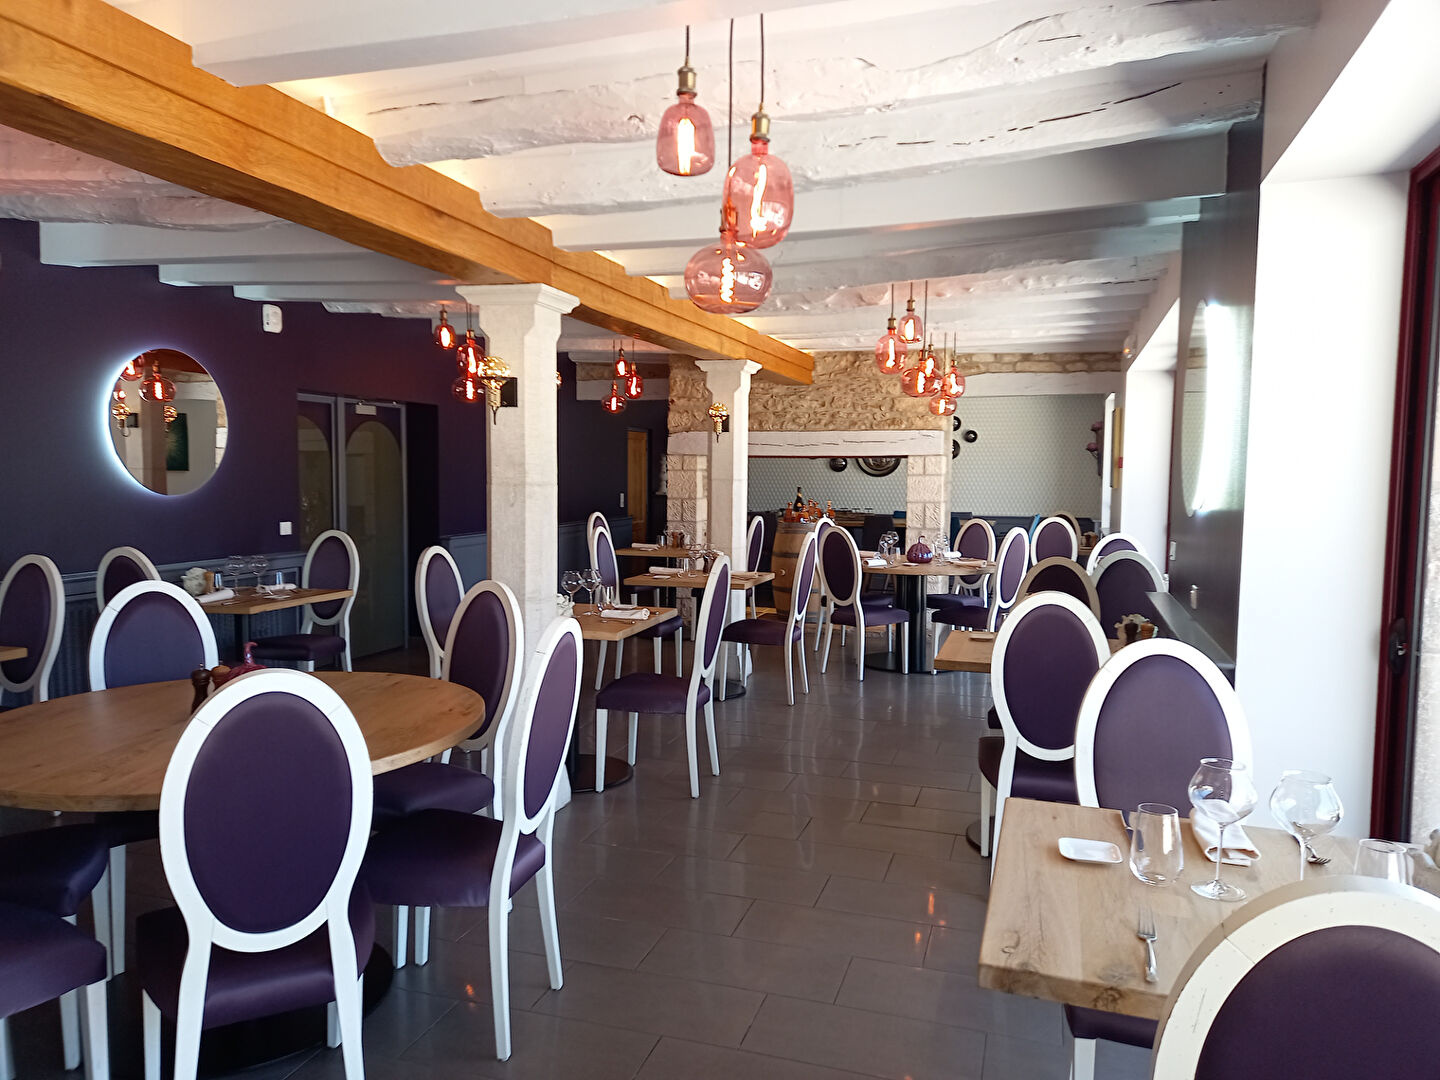 SECTEUR ROCAMADOUR - Hotel Restaurant - 13 chambres - Piscin 